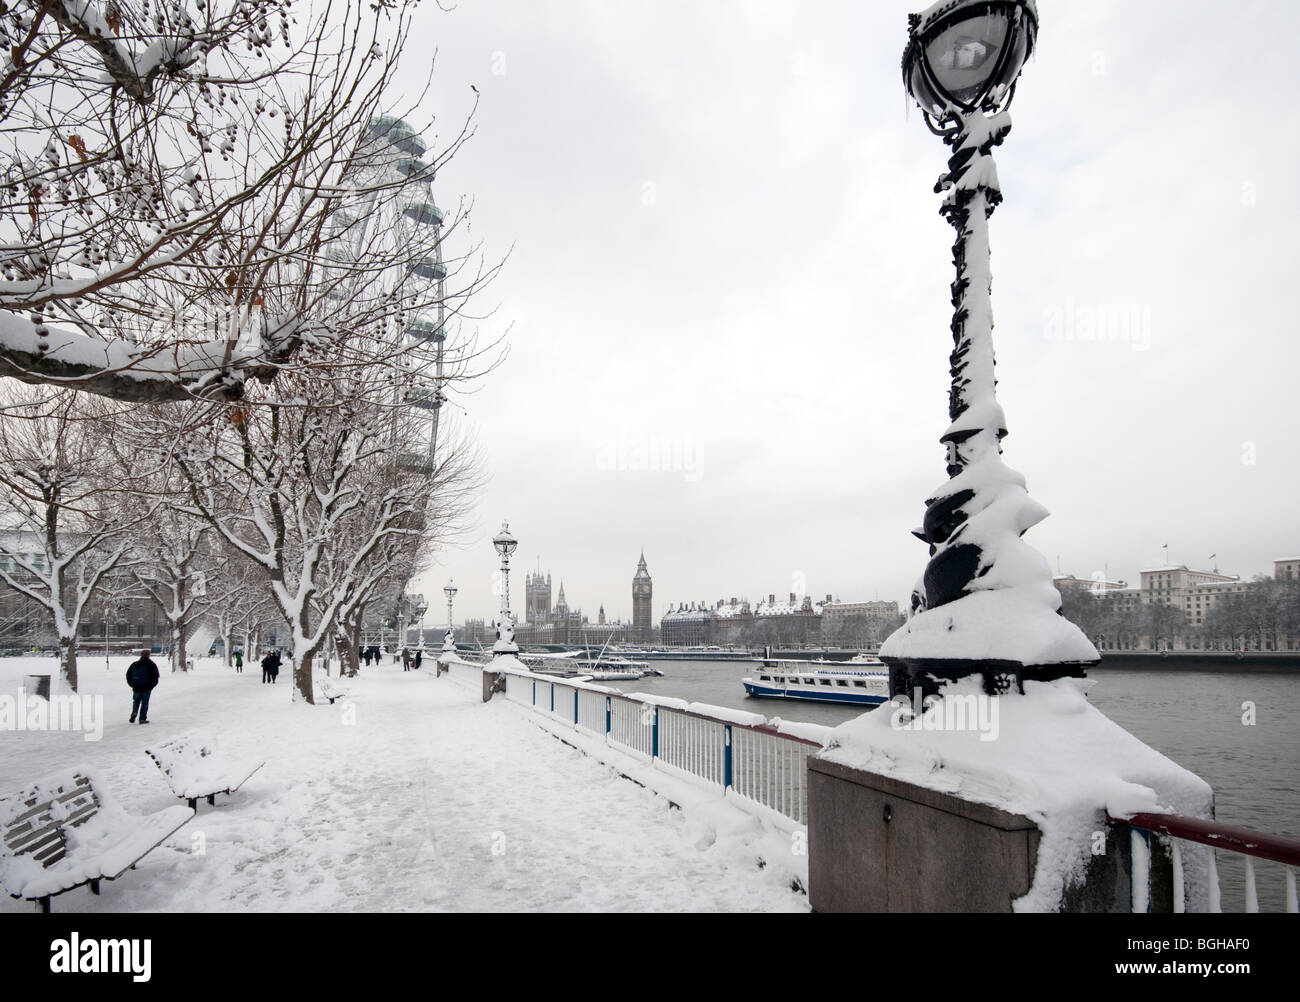 Das London Eye auf der South Bank im Schnee, Blick Richtung Houses of Parliament und Westminster Bridge Stockfoto